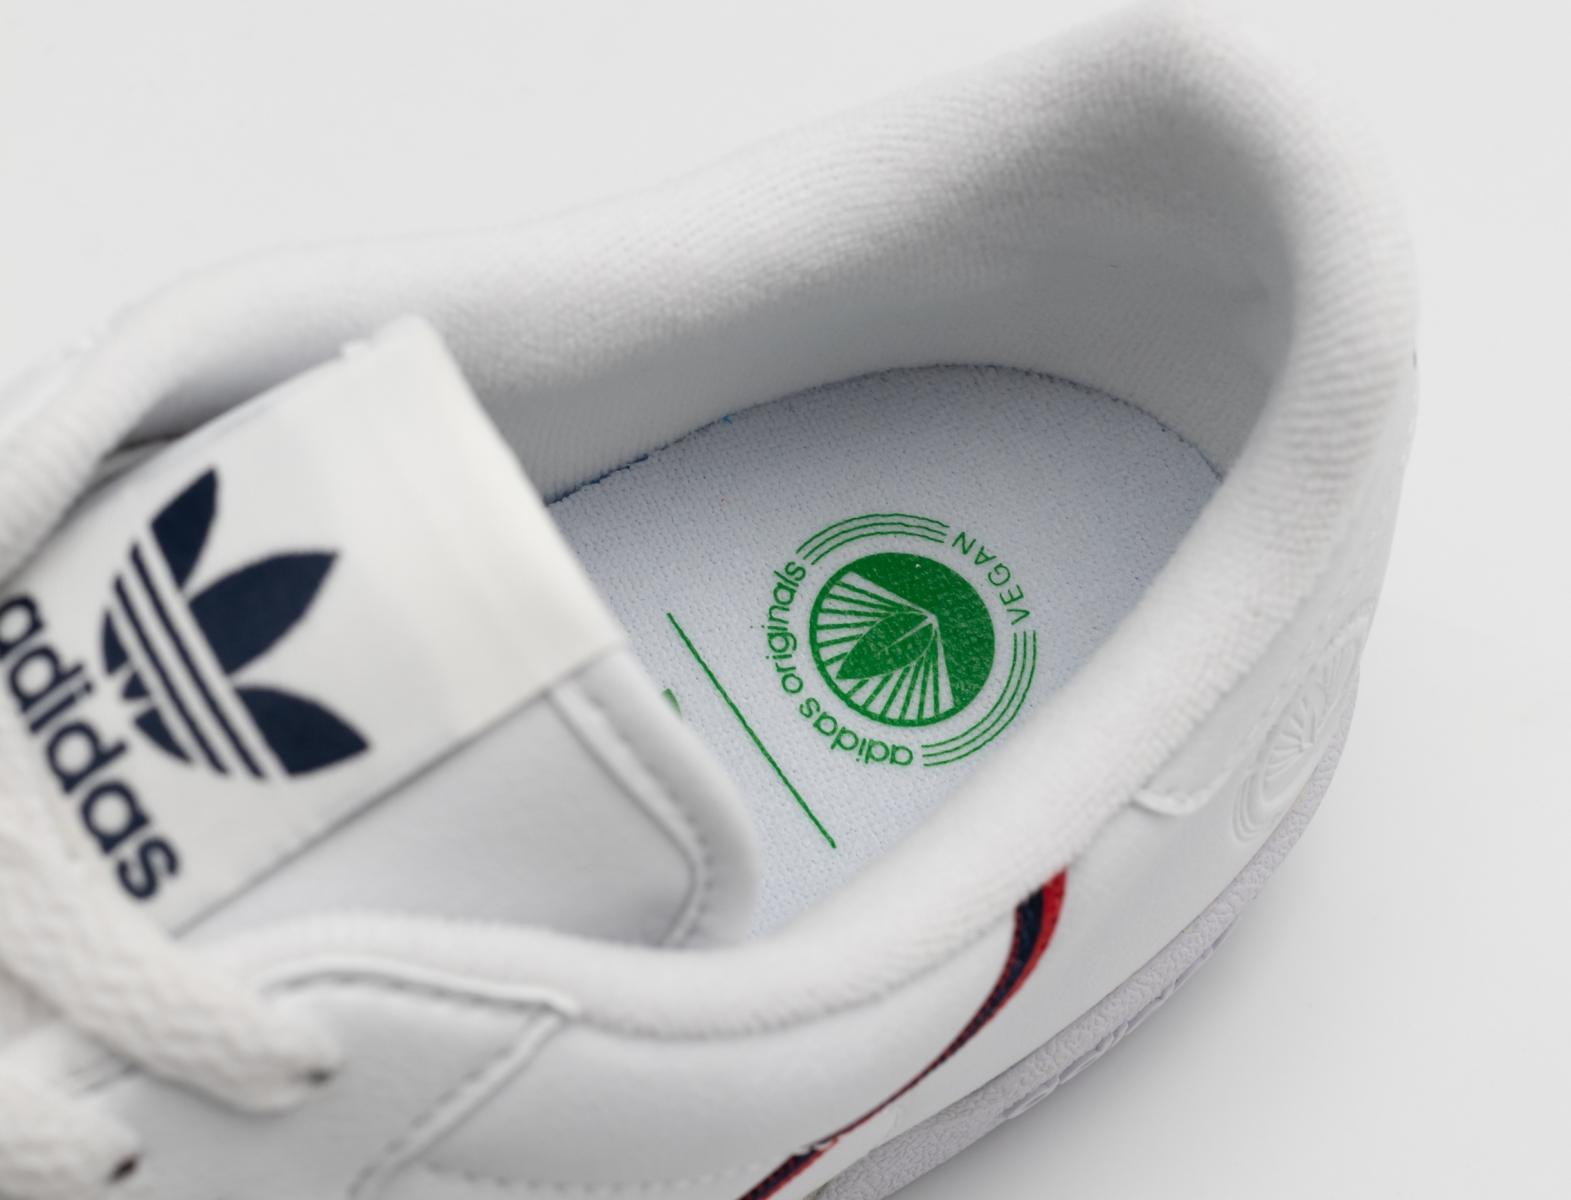 Adidas представил веганские версии культовых моделей кроссовок